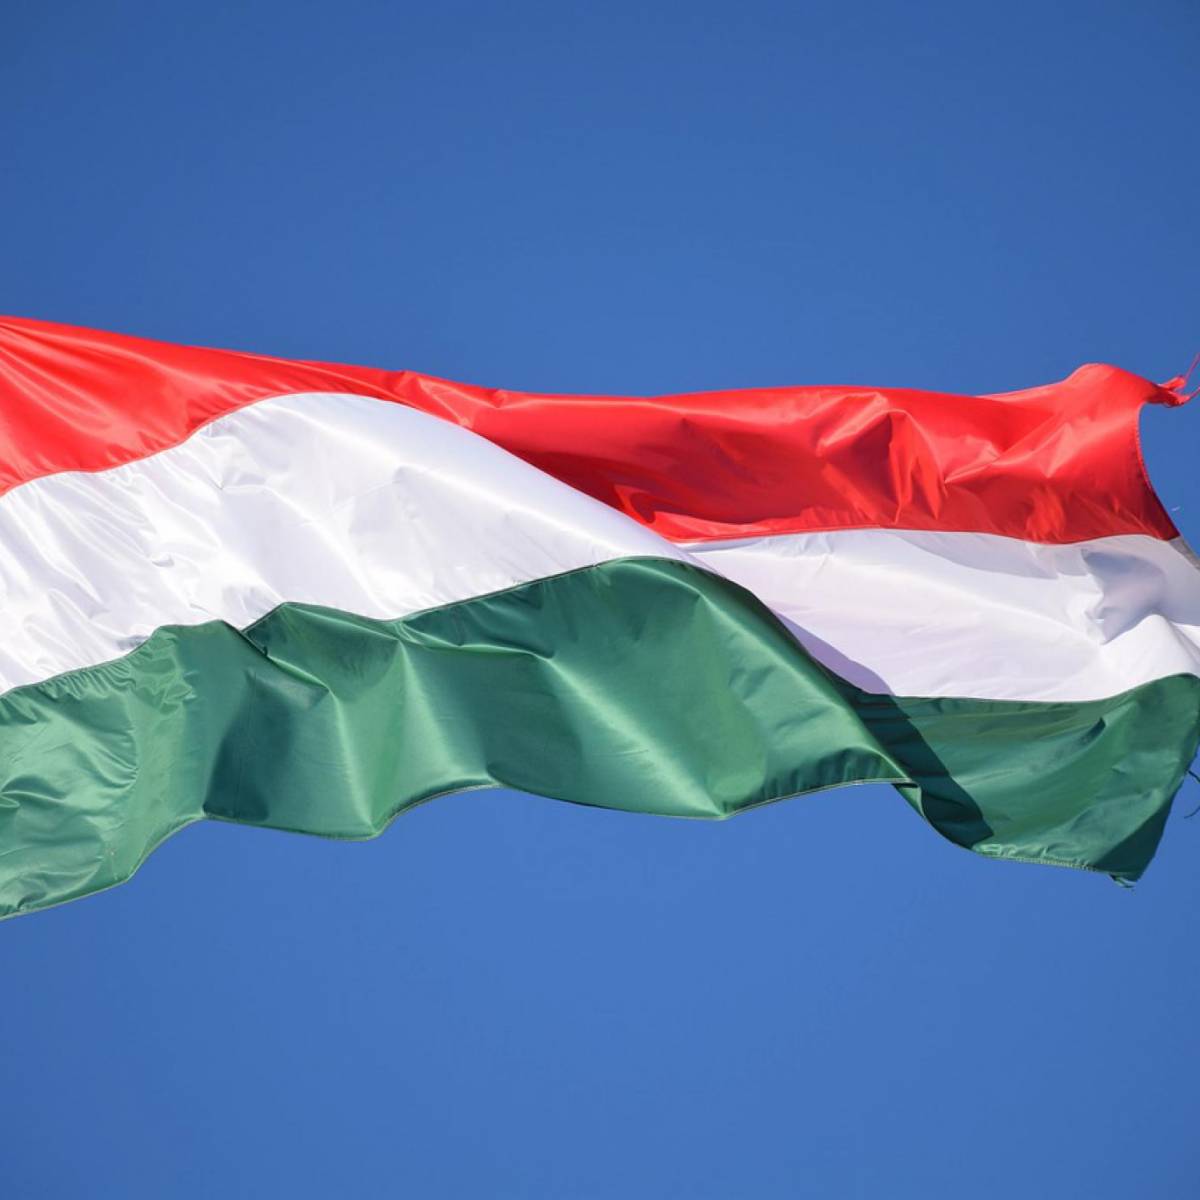 «Финансовый рычаг». Удастся ли ЕС подавить самостоятельность Венгрии